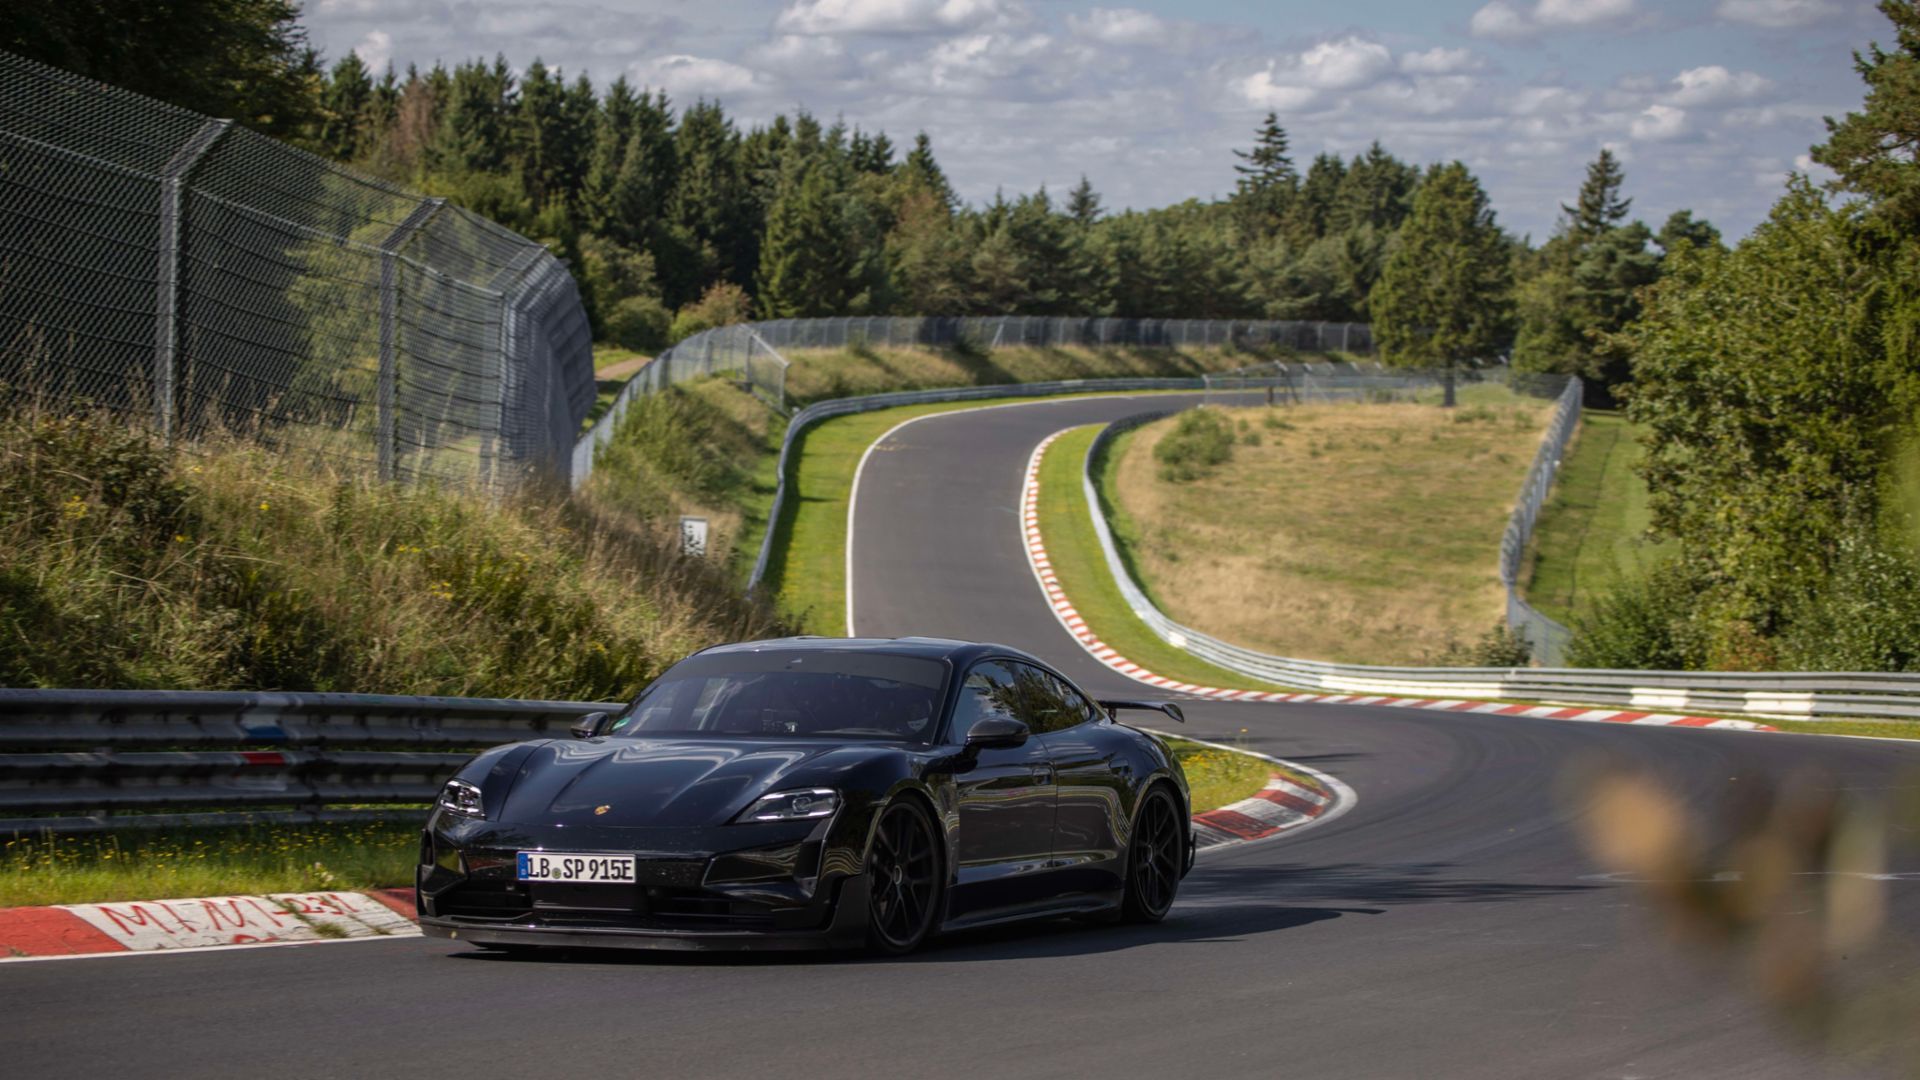 18 sekunder hurtigere end Tesla Model S Plaid: Porsche testede den elektriske sportsvogn Taycan Turbo GT på Nürburgring